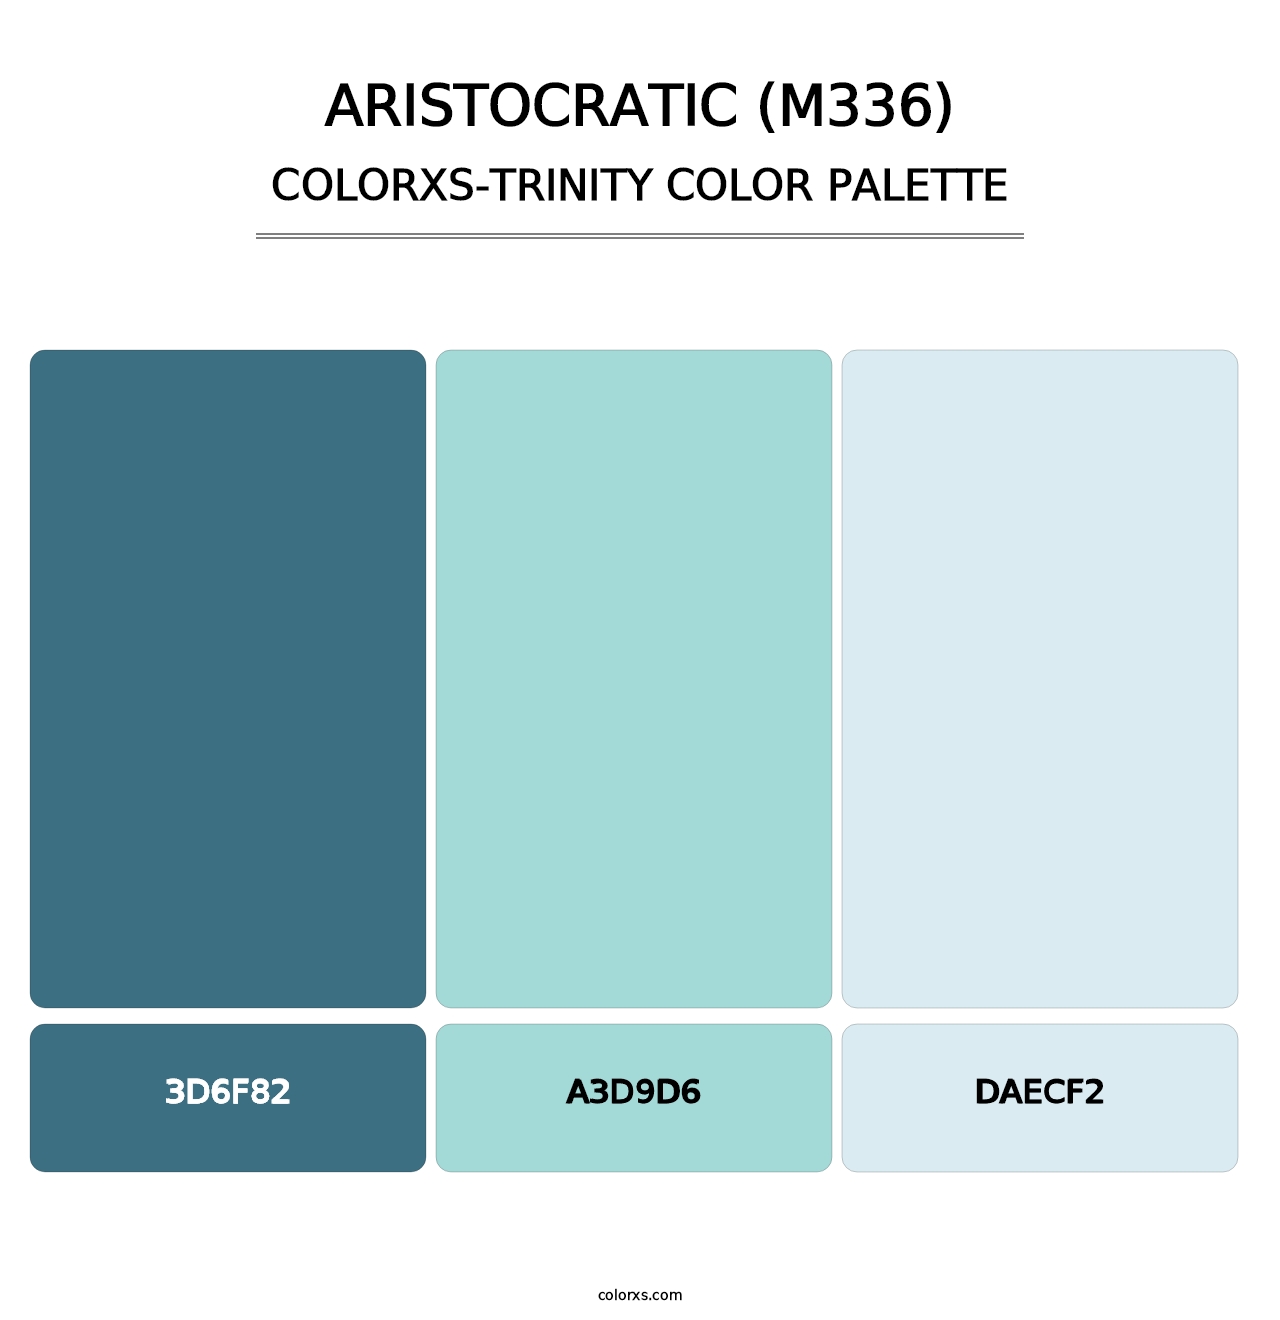 Aristocratic (M336) - Colorxs Trinity Palette